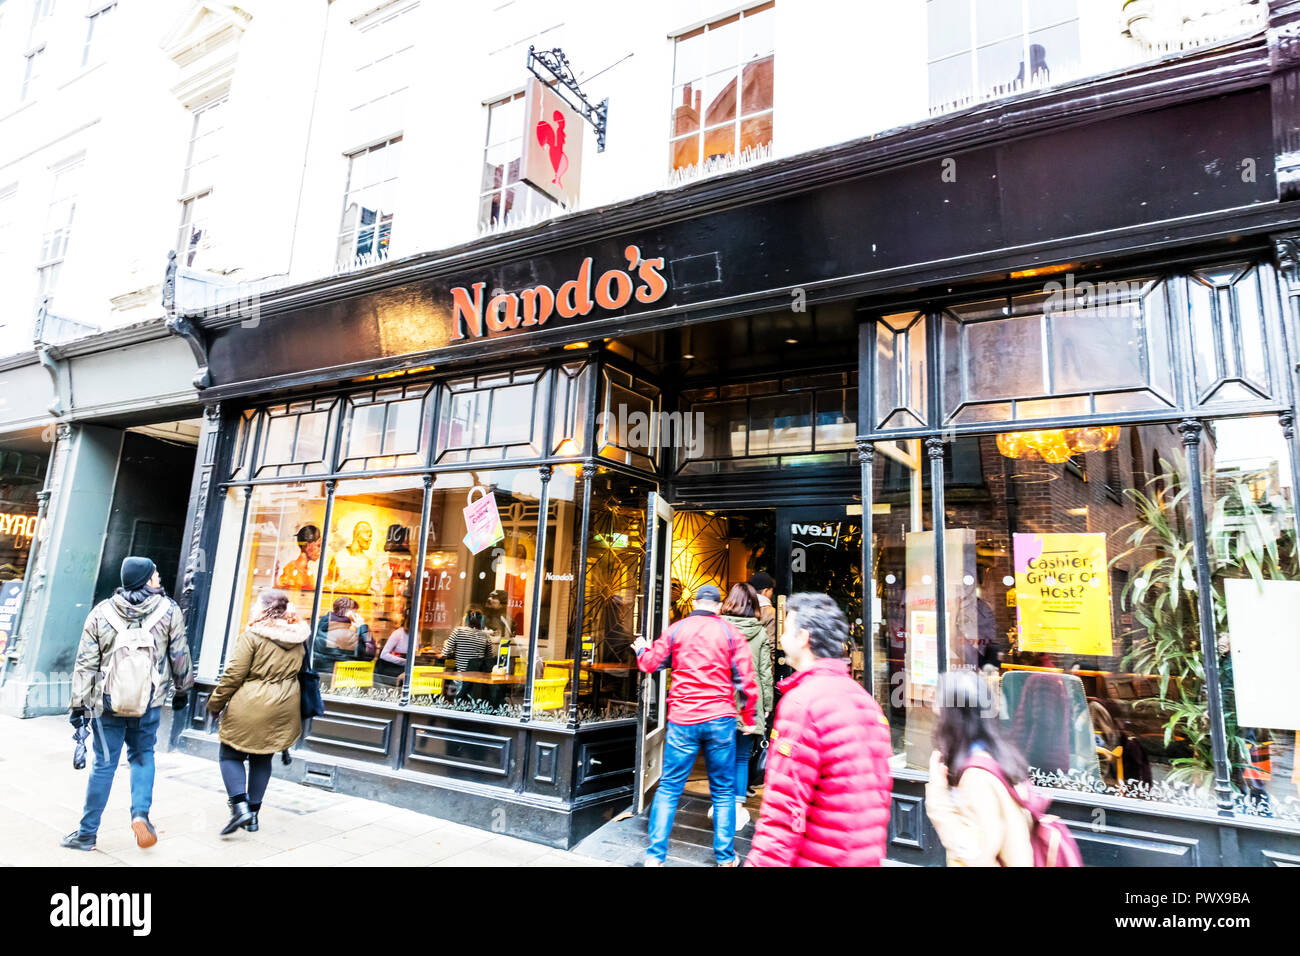 Nando's Restaurant chain, Nando's Restaurant York, Nando's Restaurant, Nando's, Restaurant, Restaurant company, Restaurants, Nando's logo, Nando's UK Stock Photo